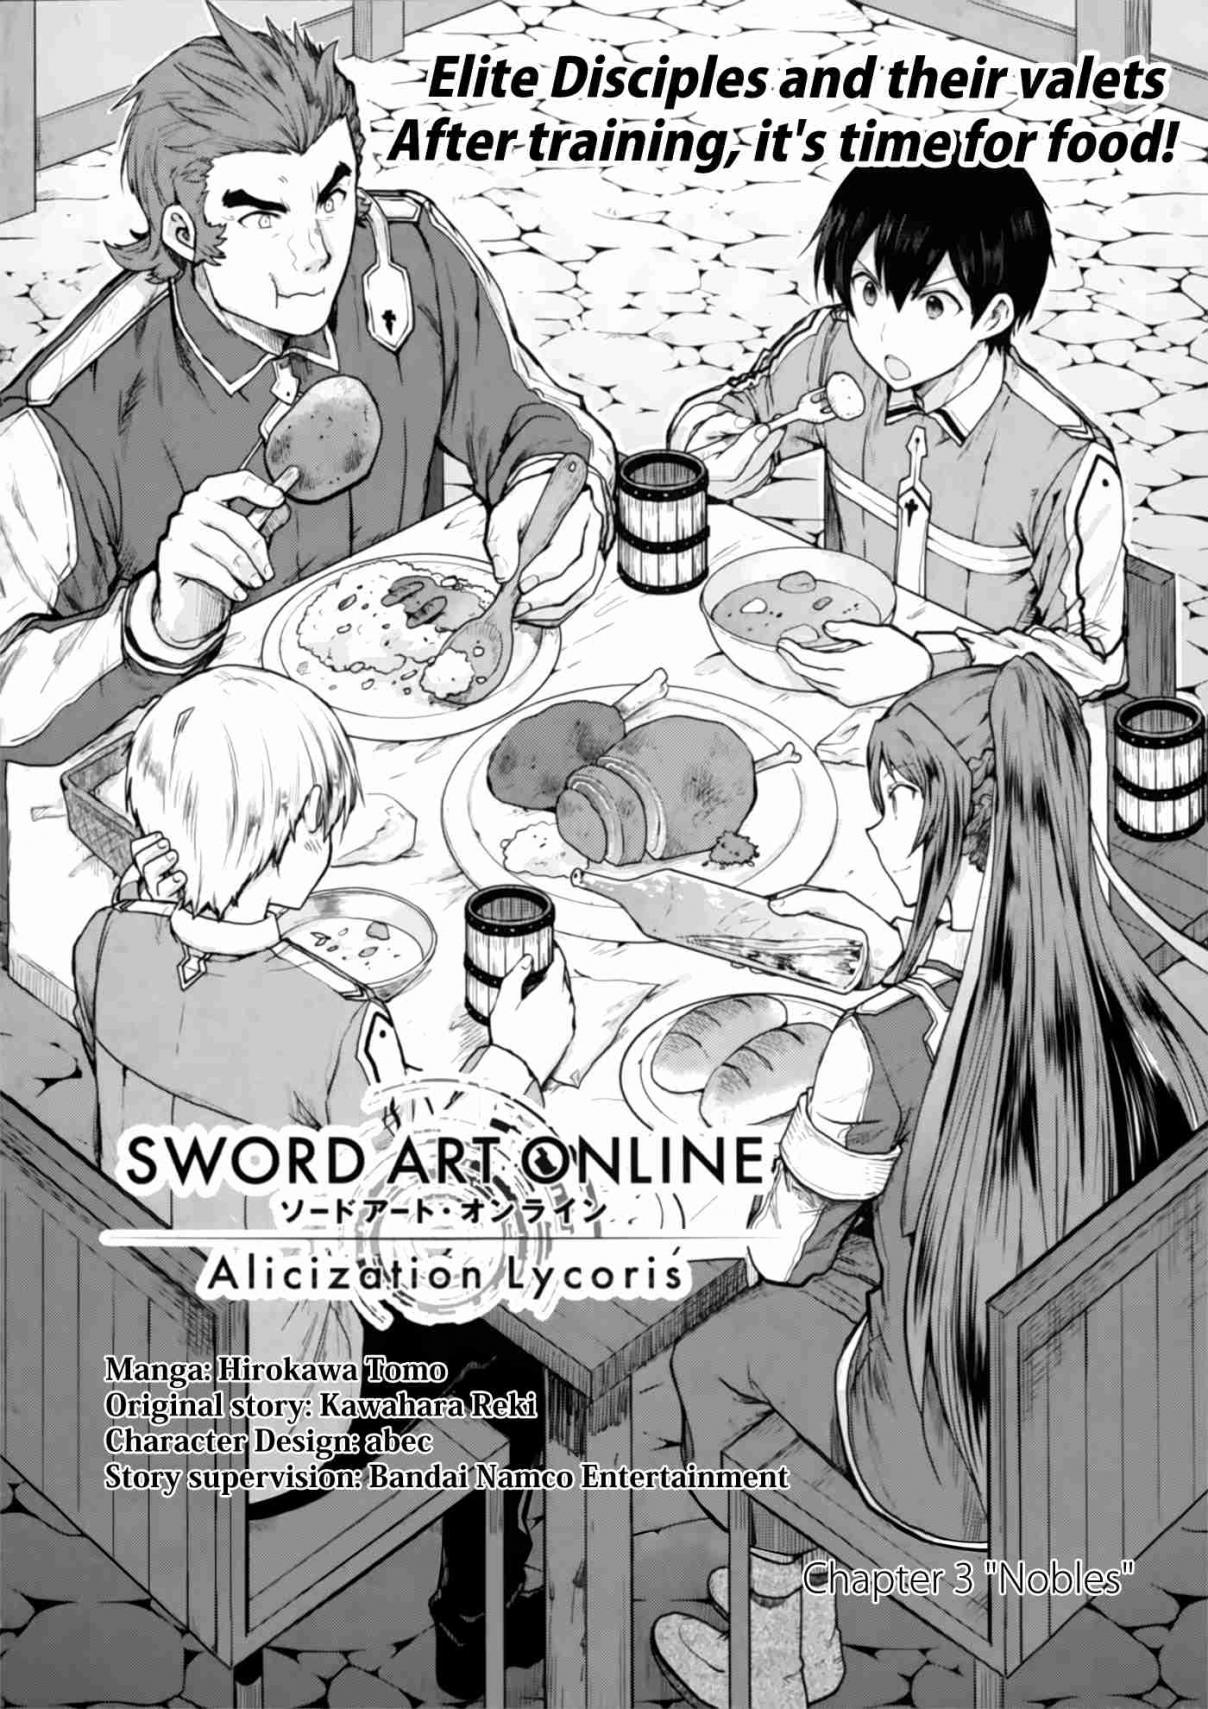 Sword Art Online Lycoris Vol. 1 Ch. 3 Nobles